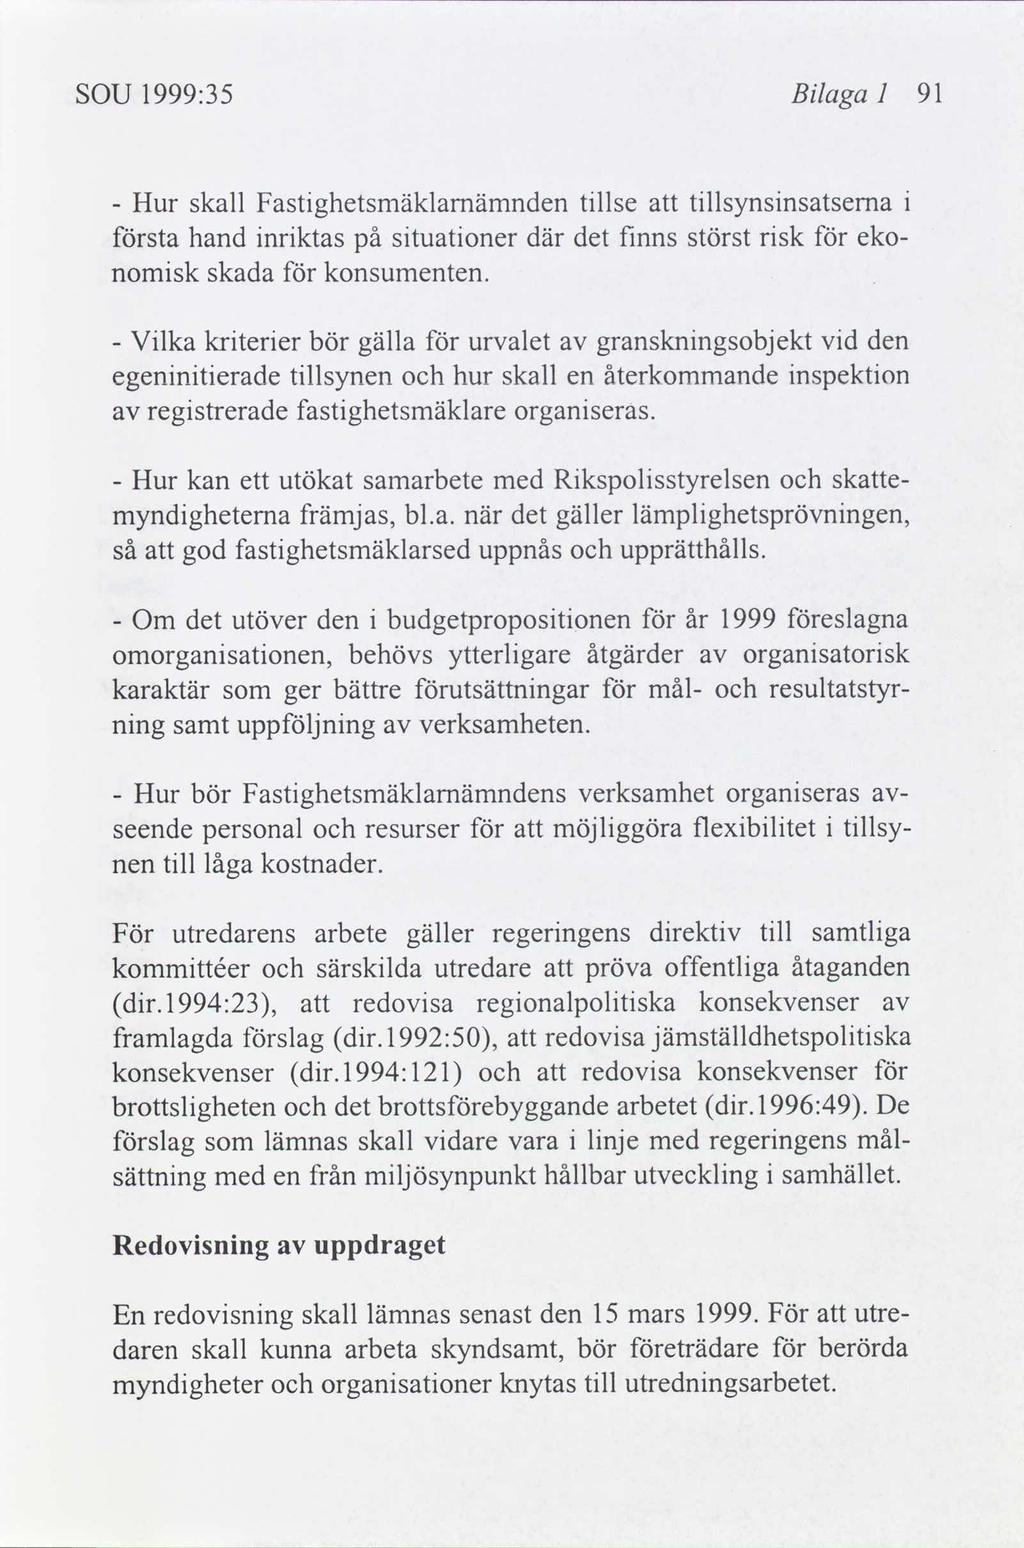 SOU 1999:35 Blaga I 91 Hur skall Fastghetsmäklamämnden tllse tllsynsnsatsema - sta hand nrktas på stuatoner där det fnns störst rsk eko- nomsk skada konsumenten.